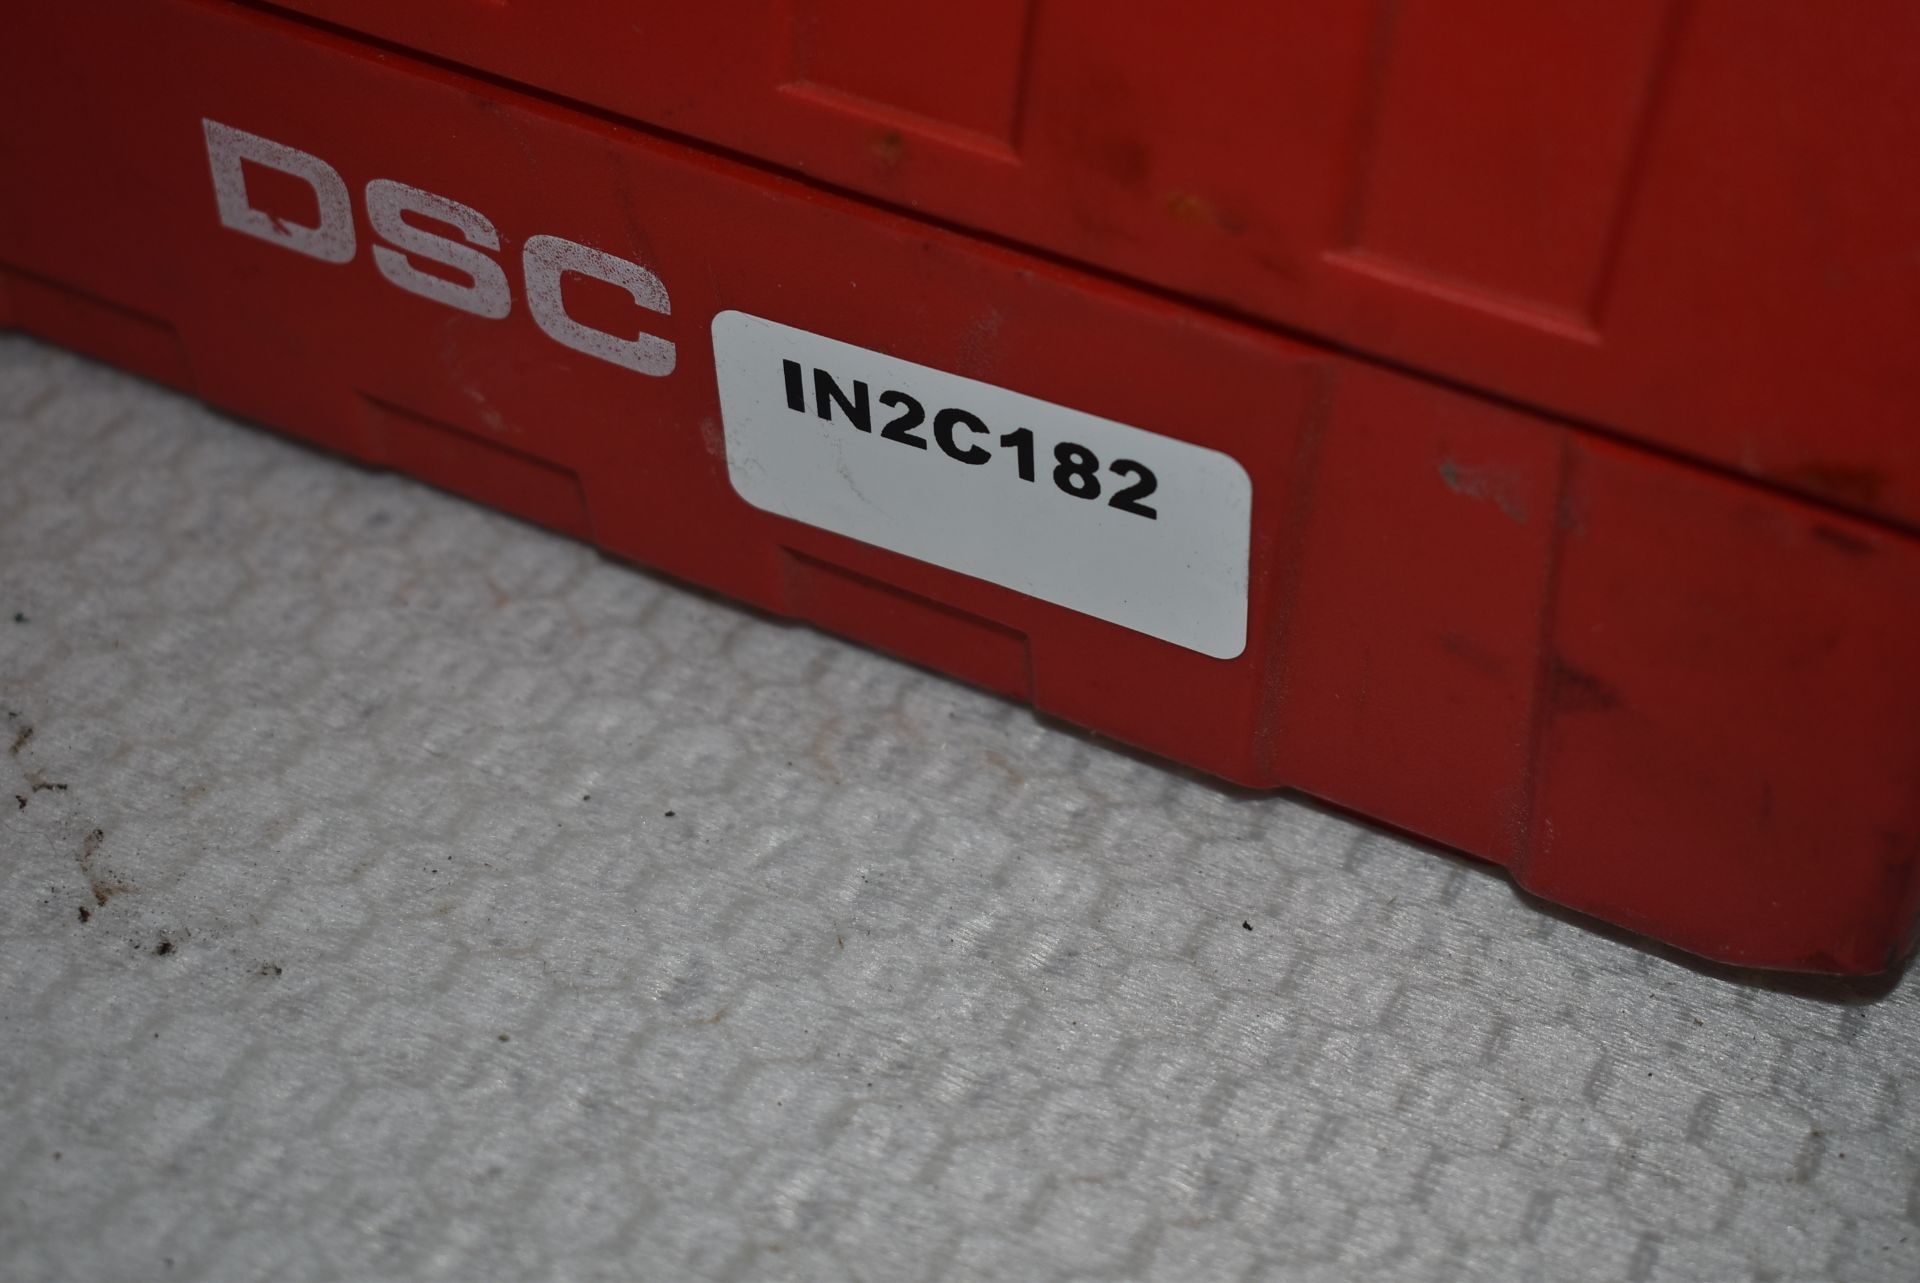 1 x Hilti DSC Foam Dispenser With Case - Ref: C182 - CL816 - Location: Altrincham WA14 - Image 2 of 7